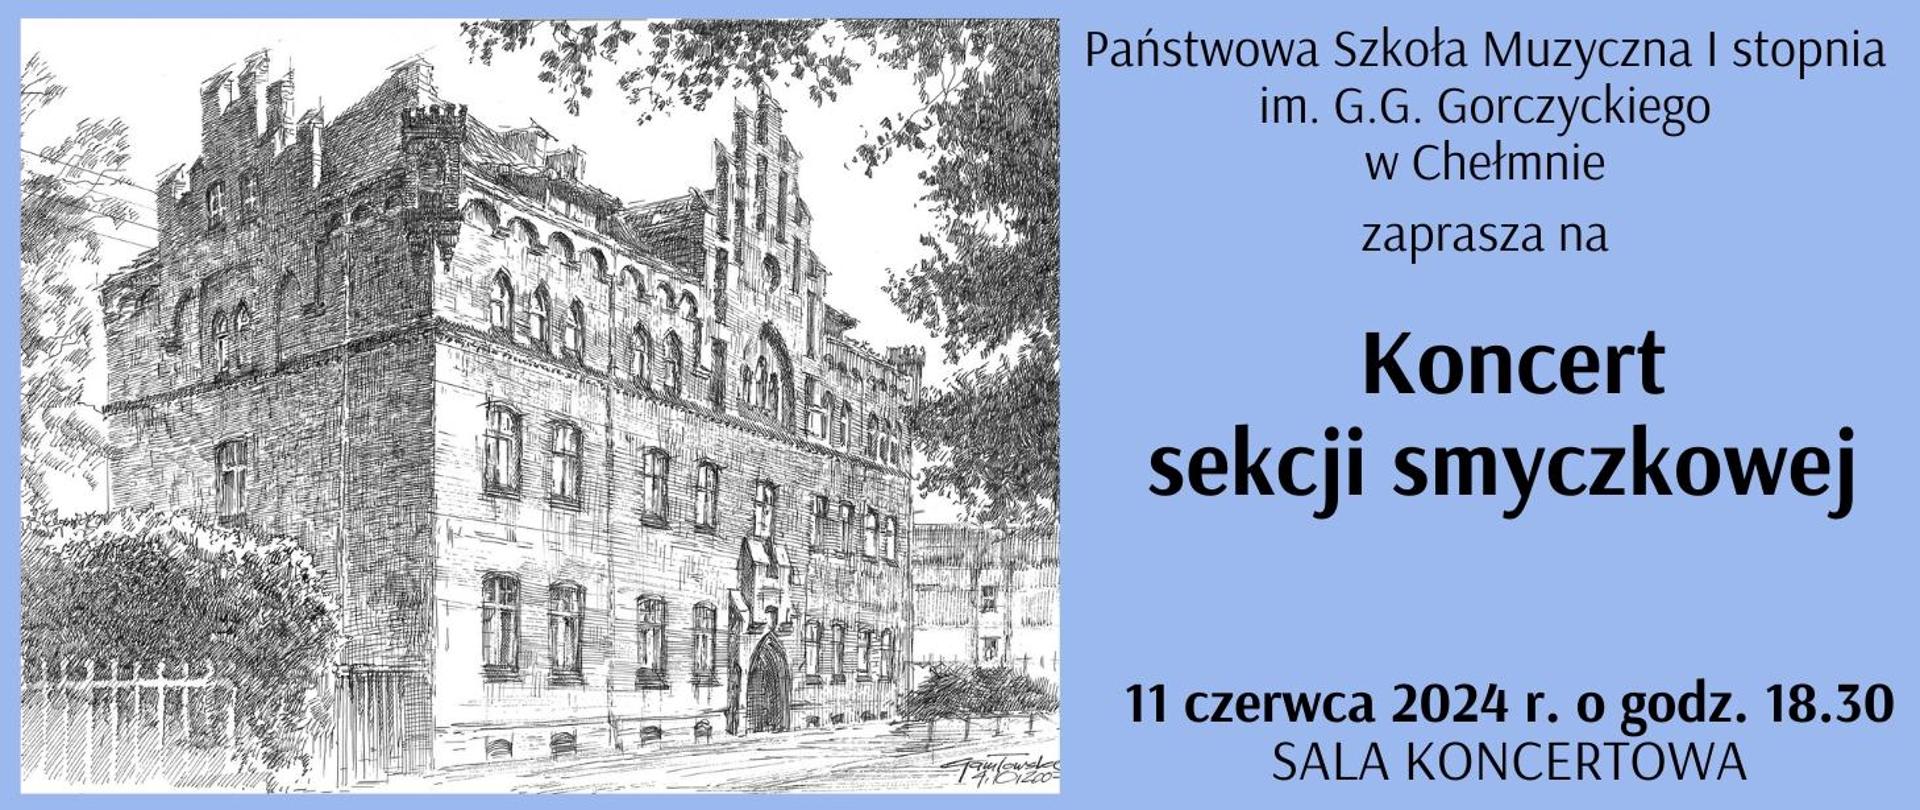 Na niebieskim tle, po lewej stronie, grafika przedstawiająca budynek PSM w Chełmnie. Po prawej stronie tekst informujący o koncercie sekcji smyczkowej.